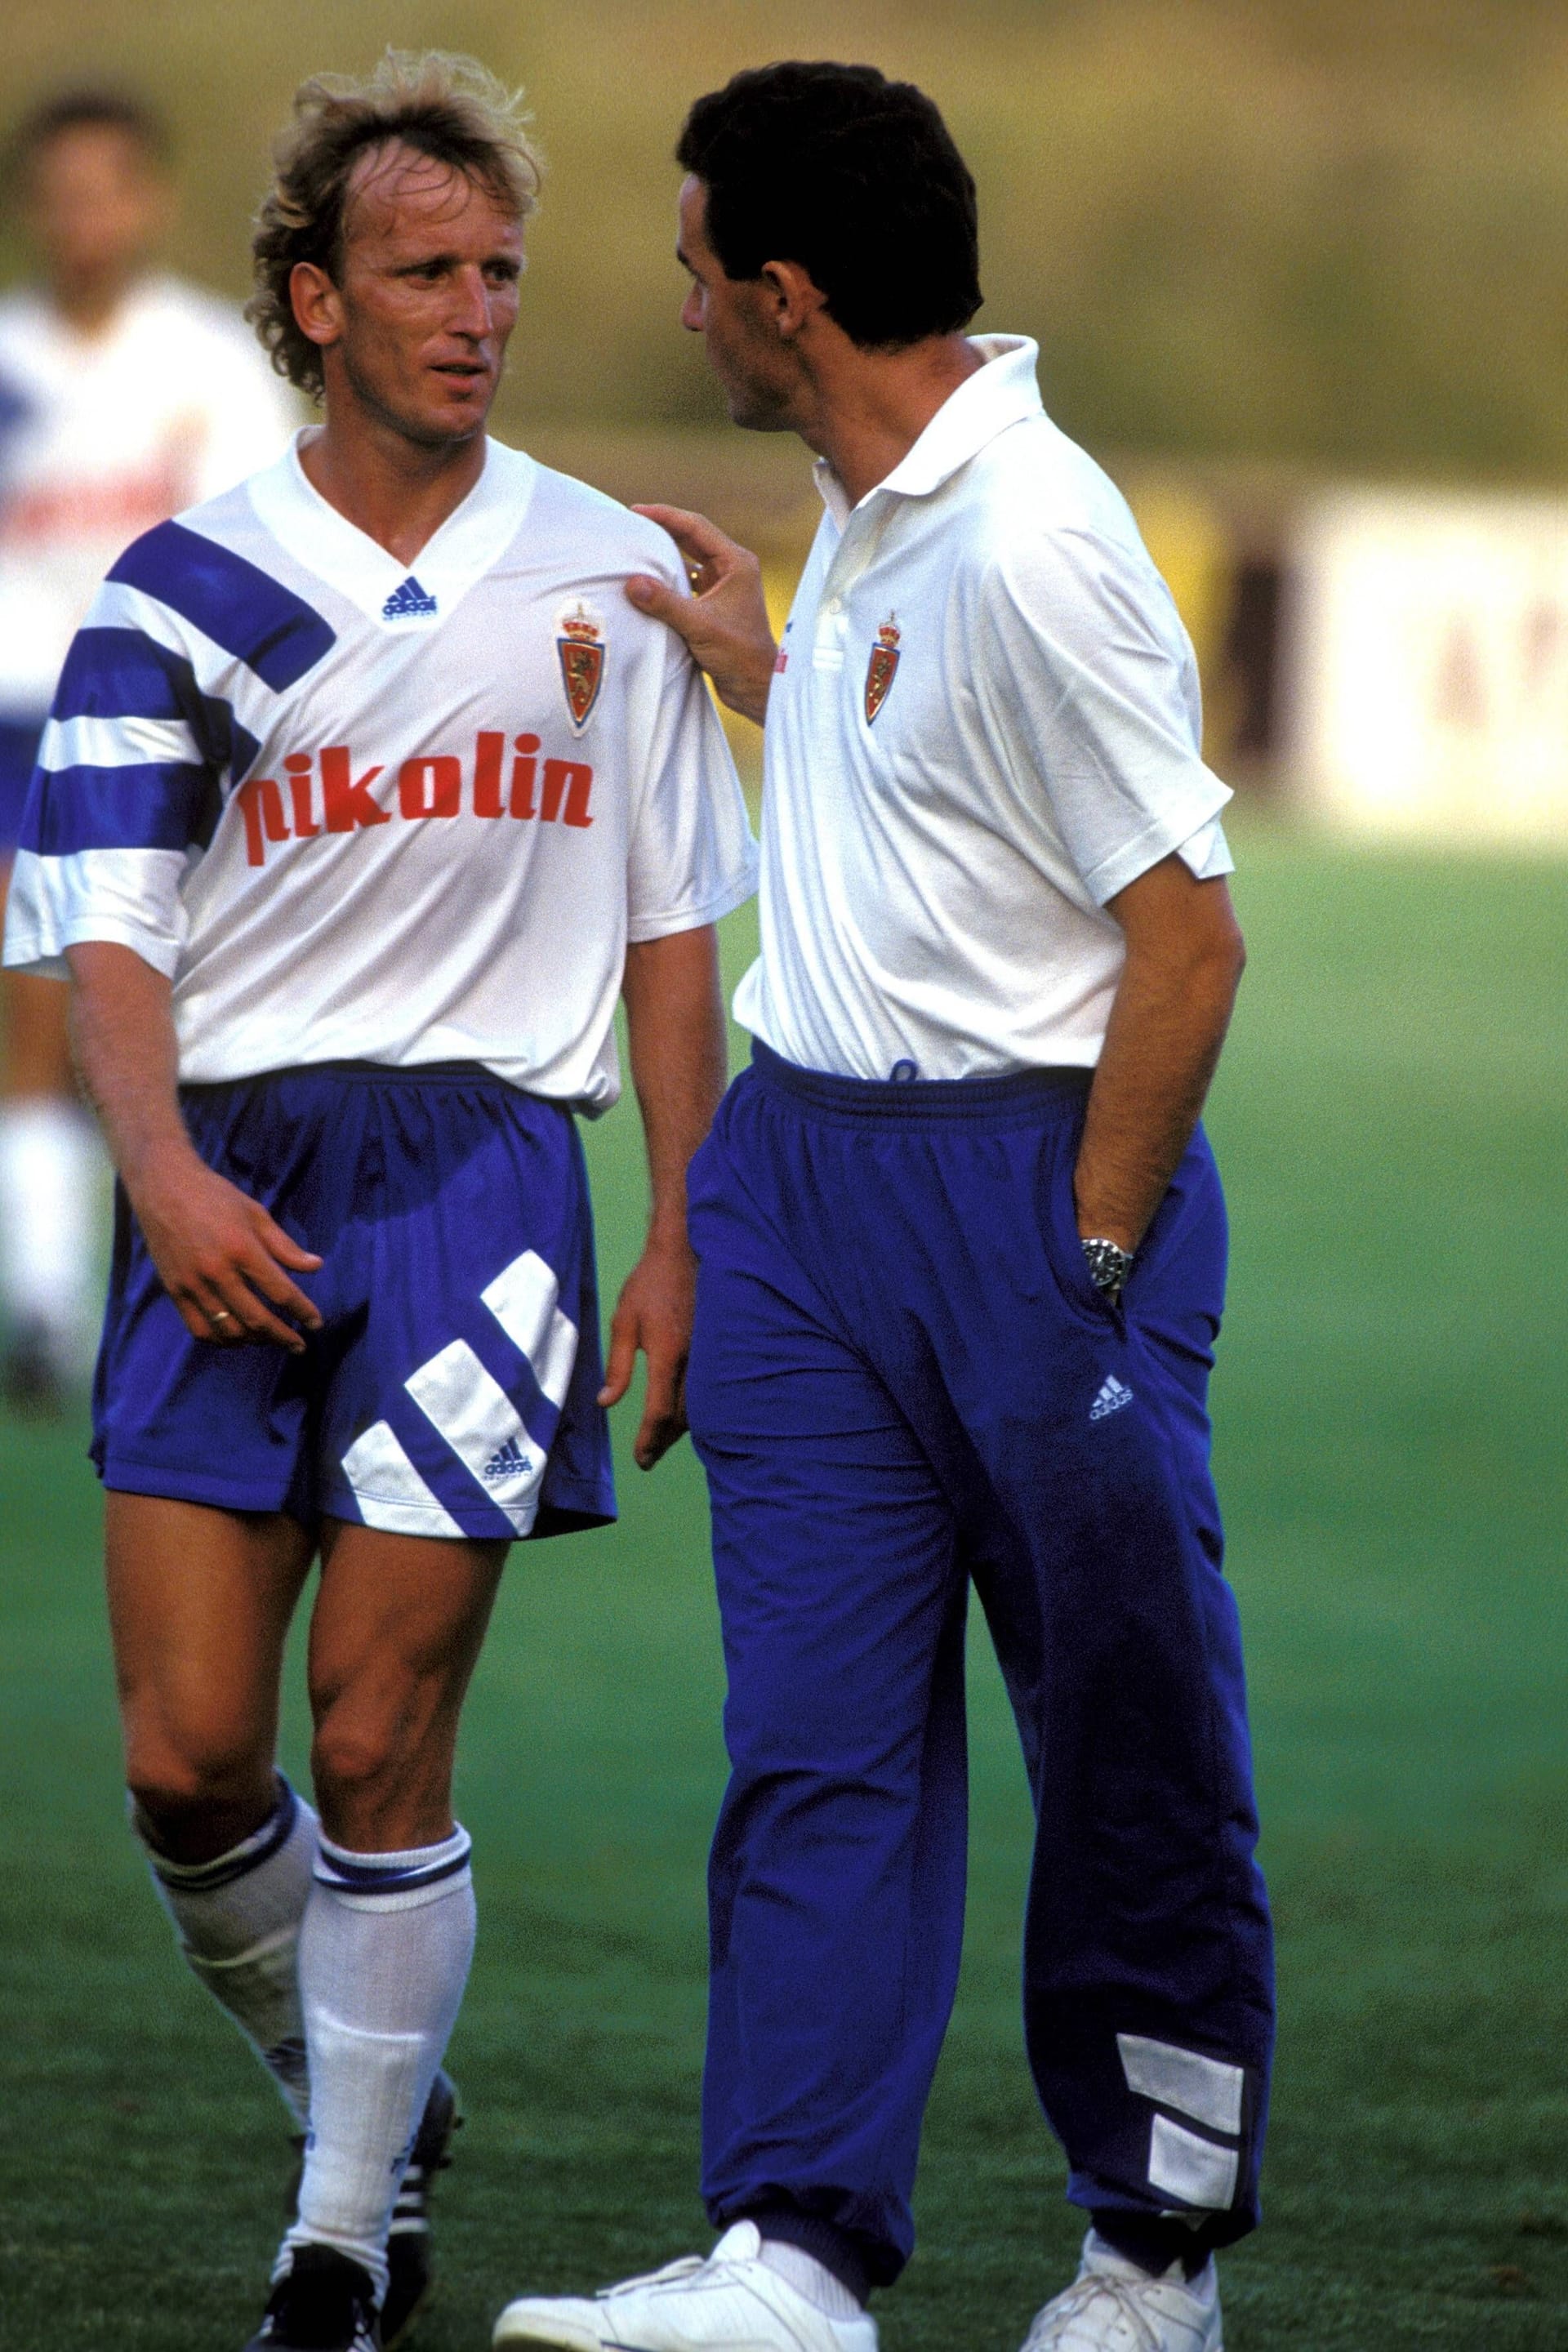 Zur Saison 1992/93 folgte der Wechsel zu Real Saragossa. Doch der Ausflug nach Spanien wurde ein kurzer. Im Frühjahr 1993 geriet er mit Trainer Victor Fernandez (r.) aneinander und wurde suspendiert. Brehme kehrte daraufhin in die Bundesliga zurück...